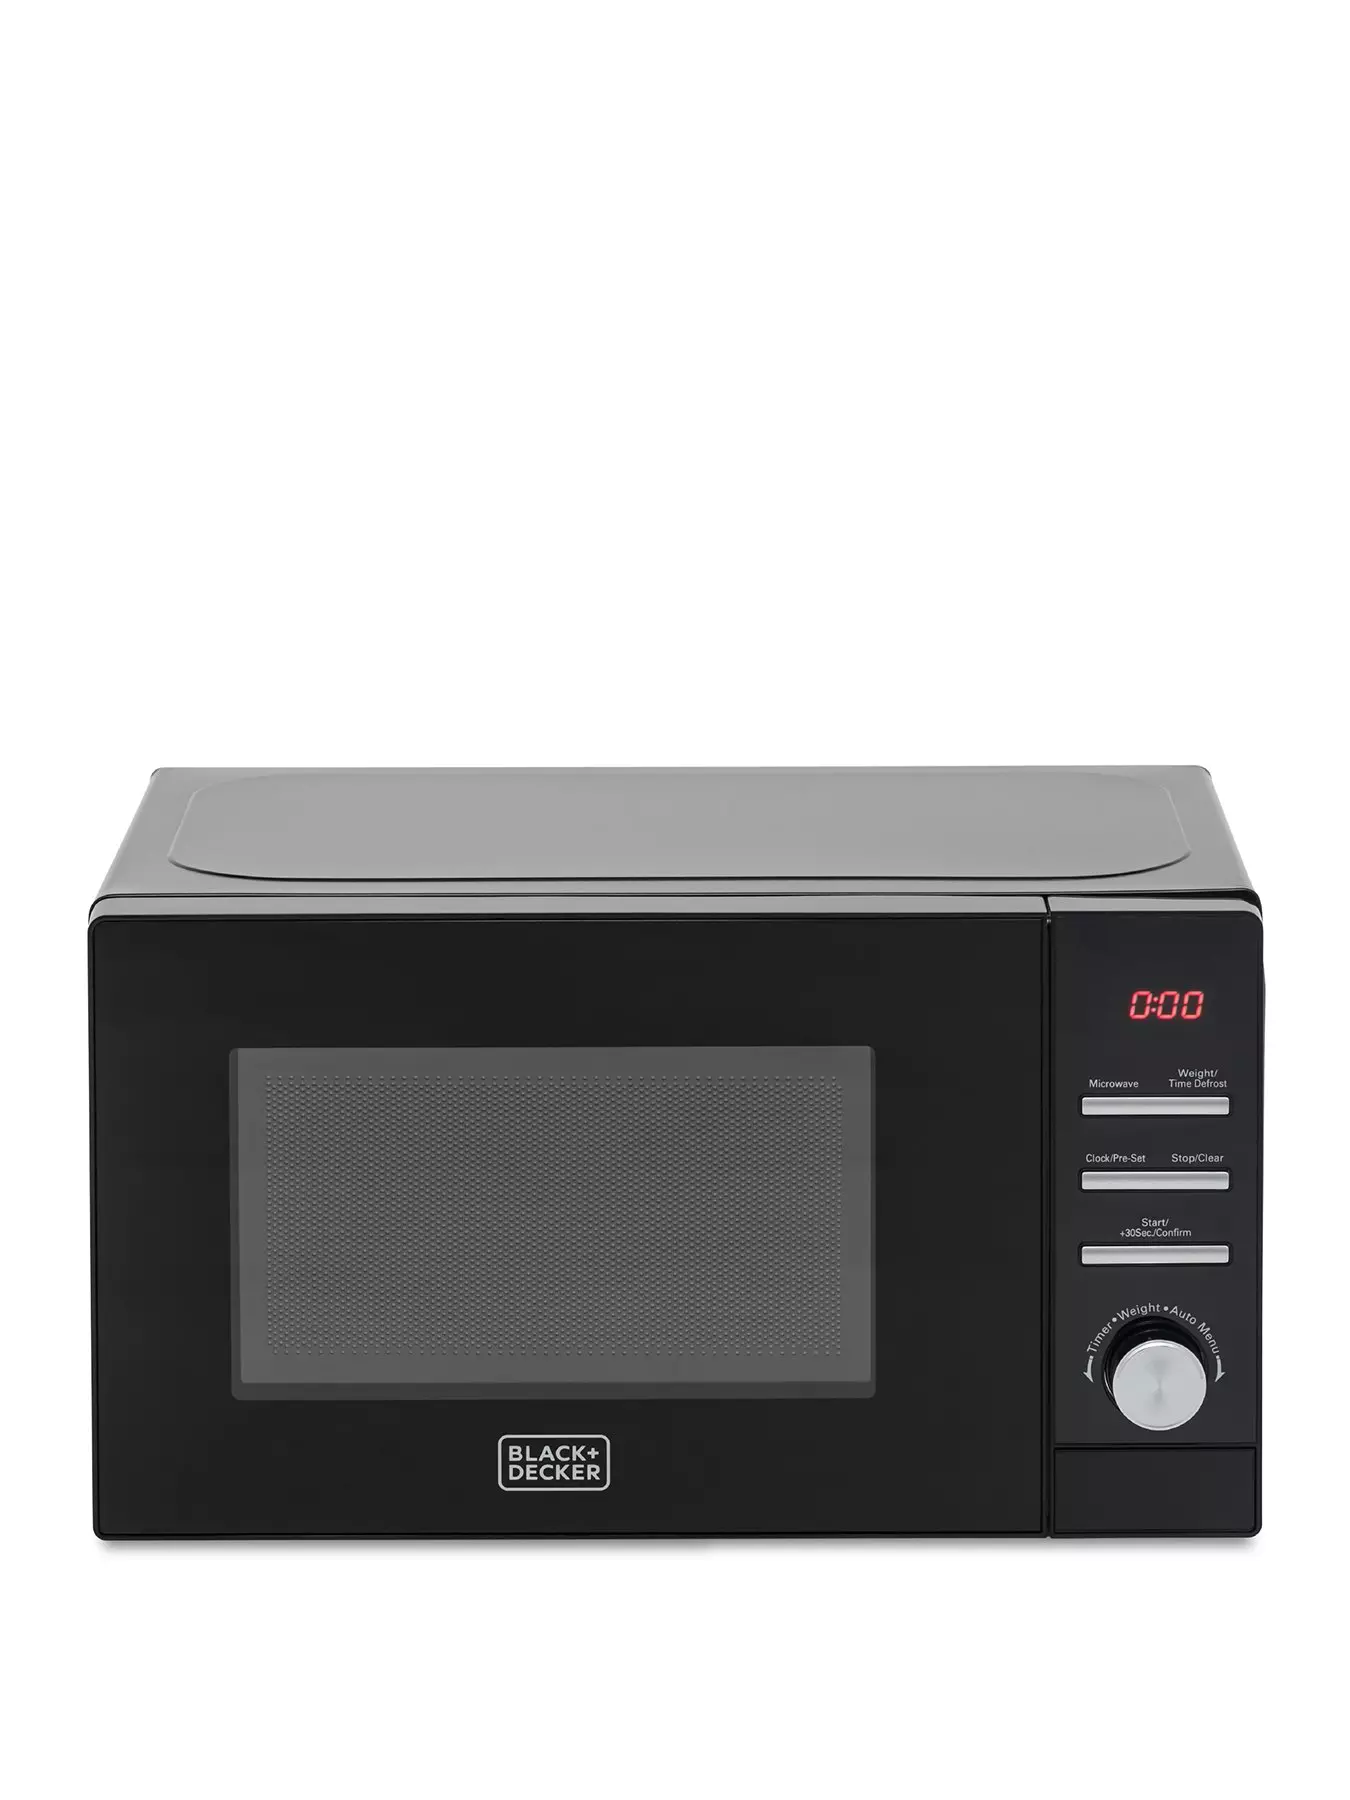 Buy Black+Decker Microwave Oven 20L MZ2020P-B5 Black Online - Shop  Electronics & Appliances on Carrefour UAE